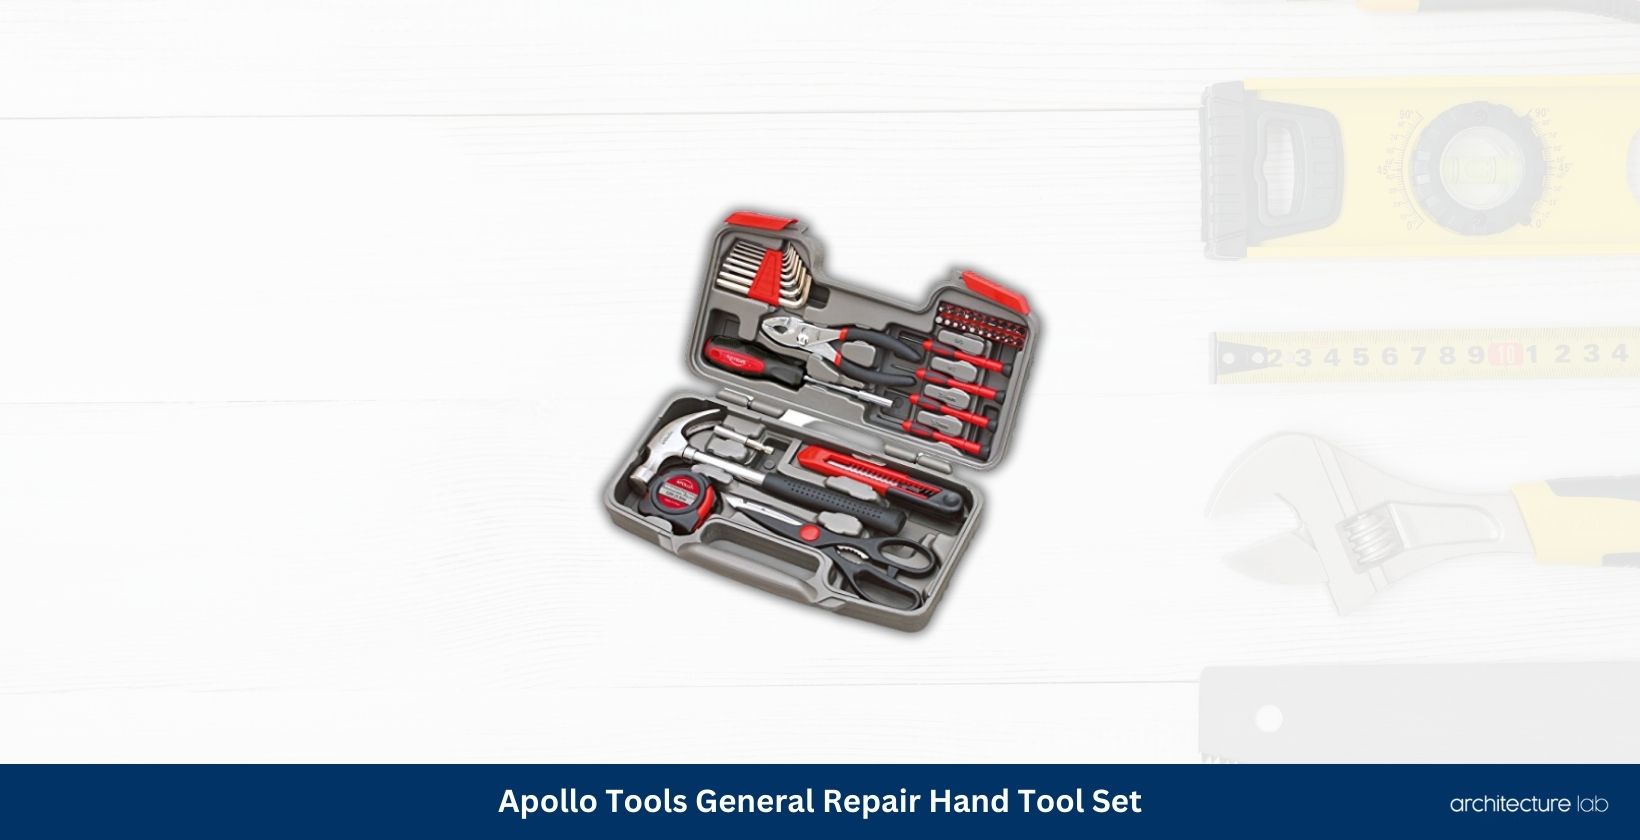 Apollo tools general repair hand tool set